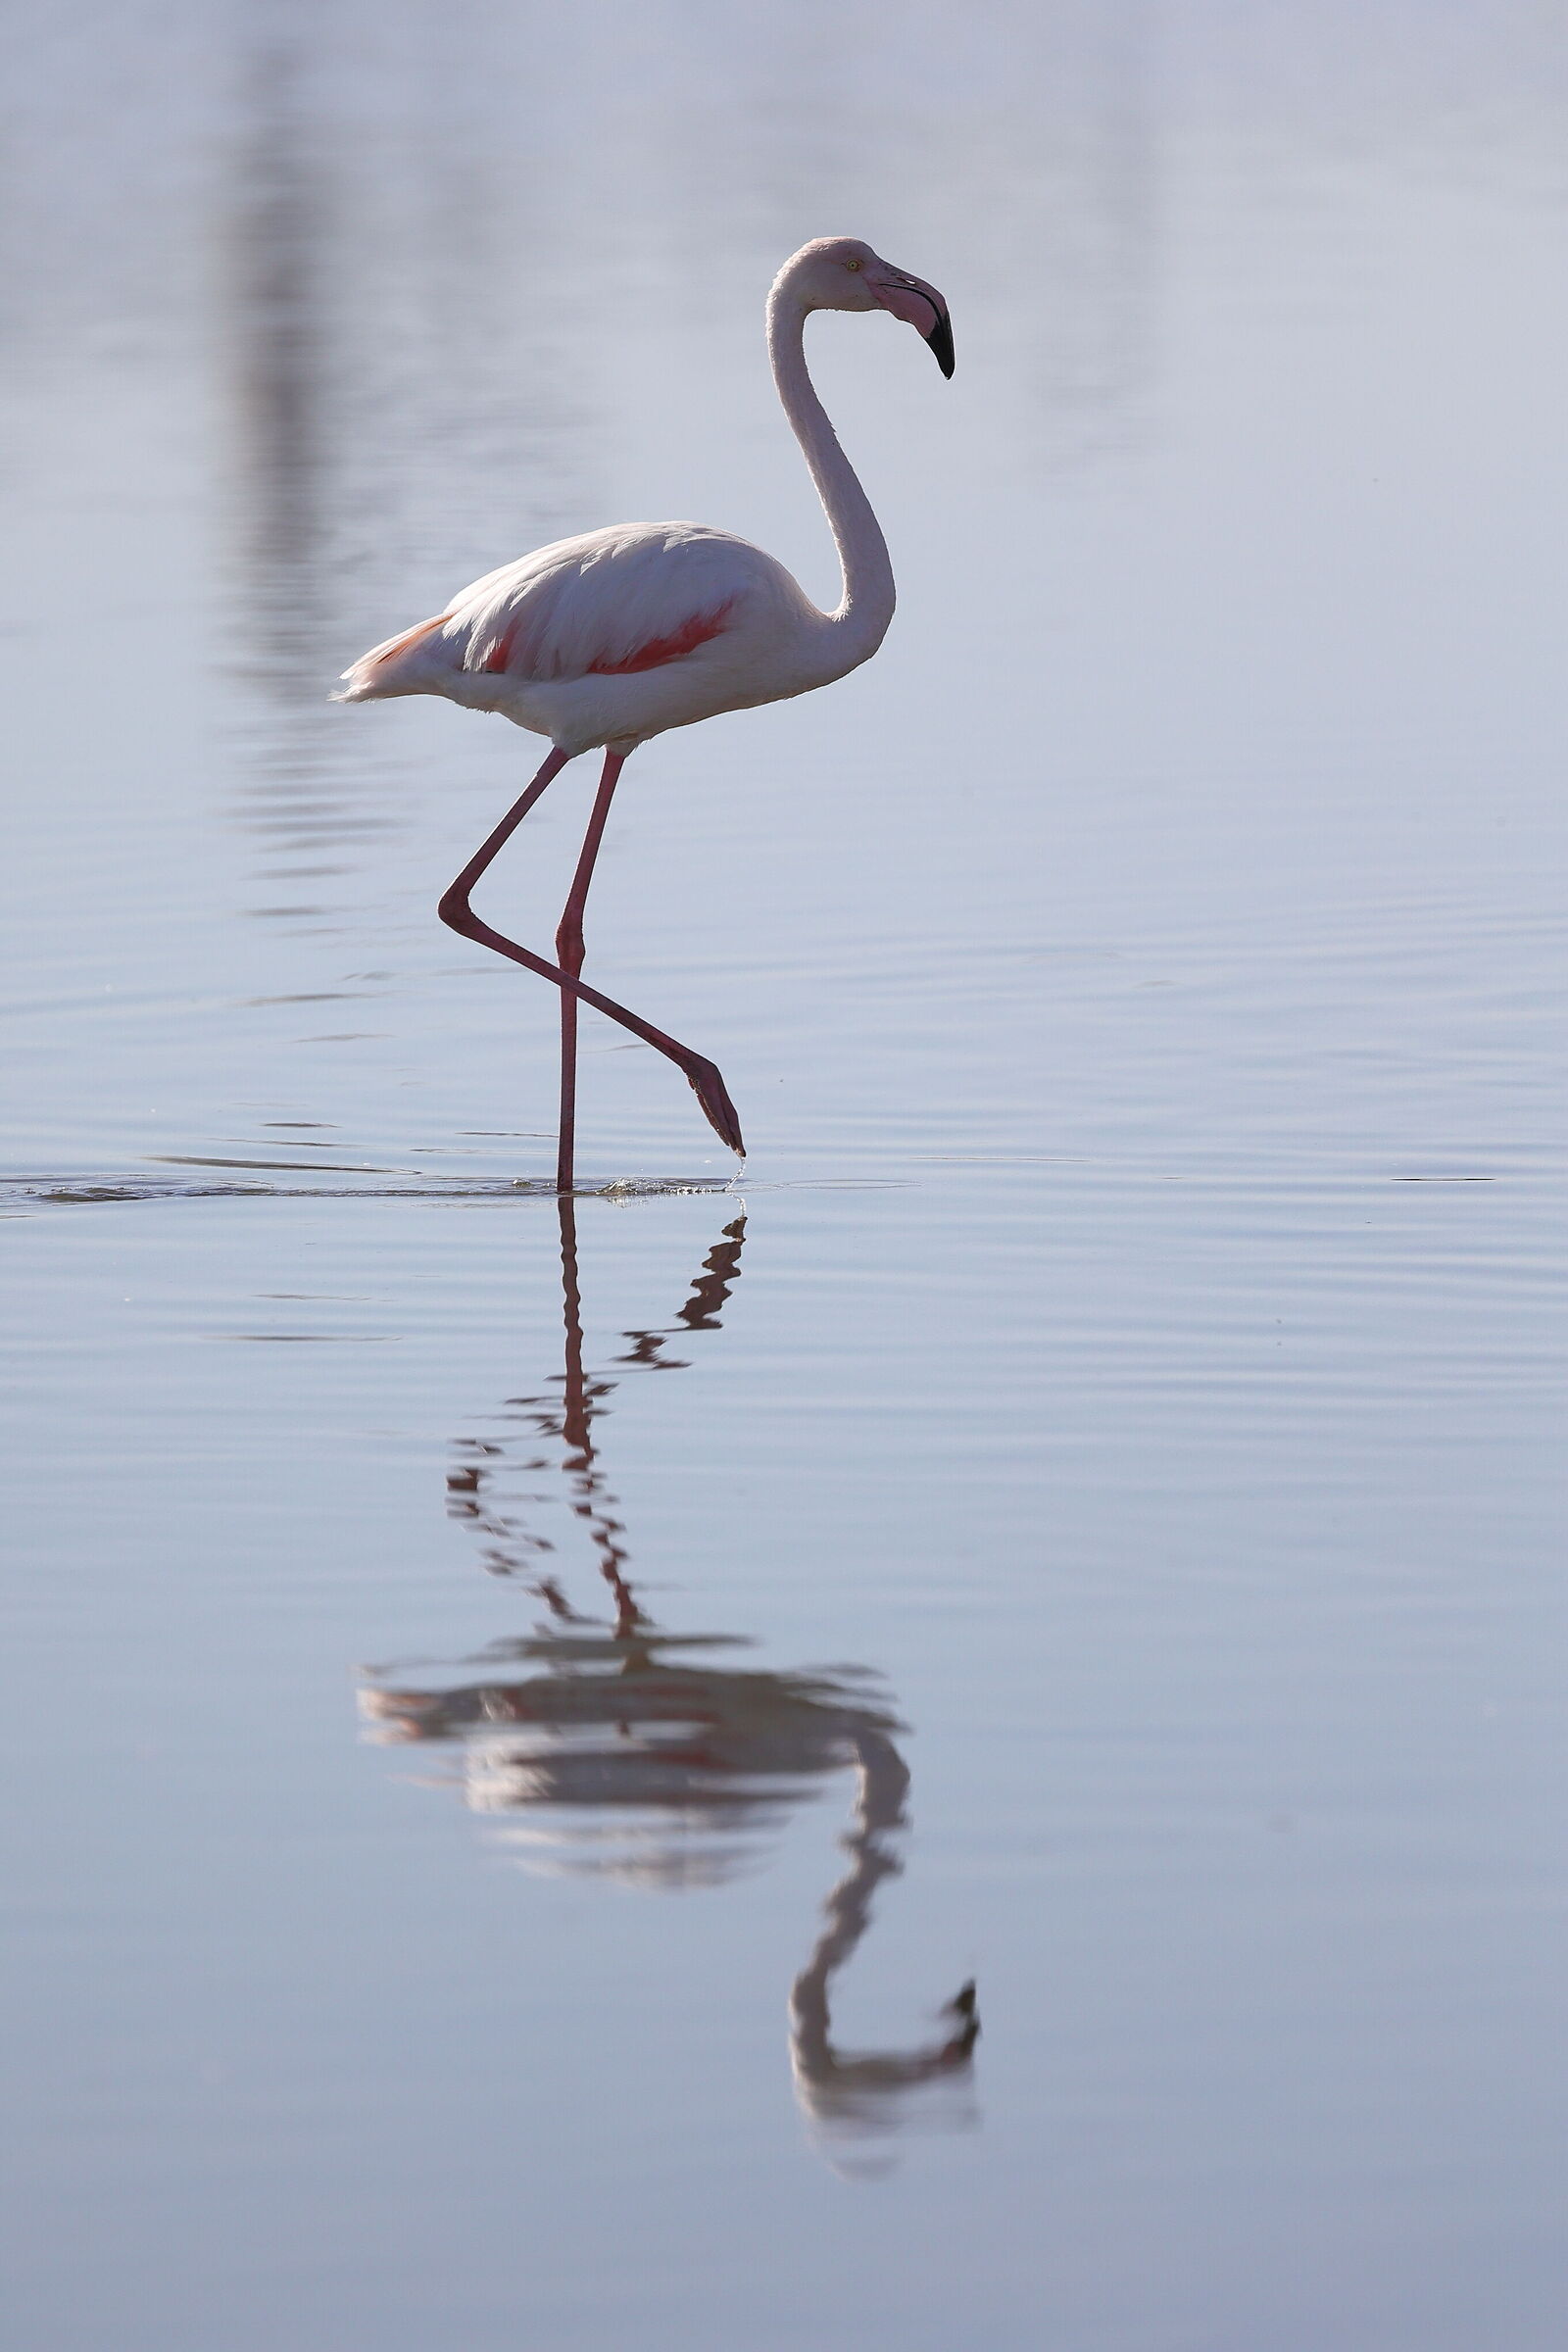 Namibia - Flamingo in the mirror...